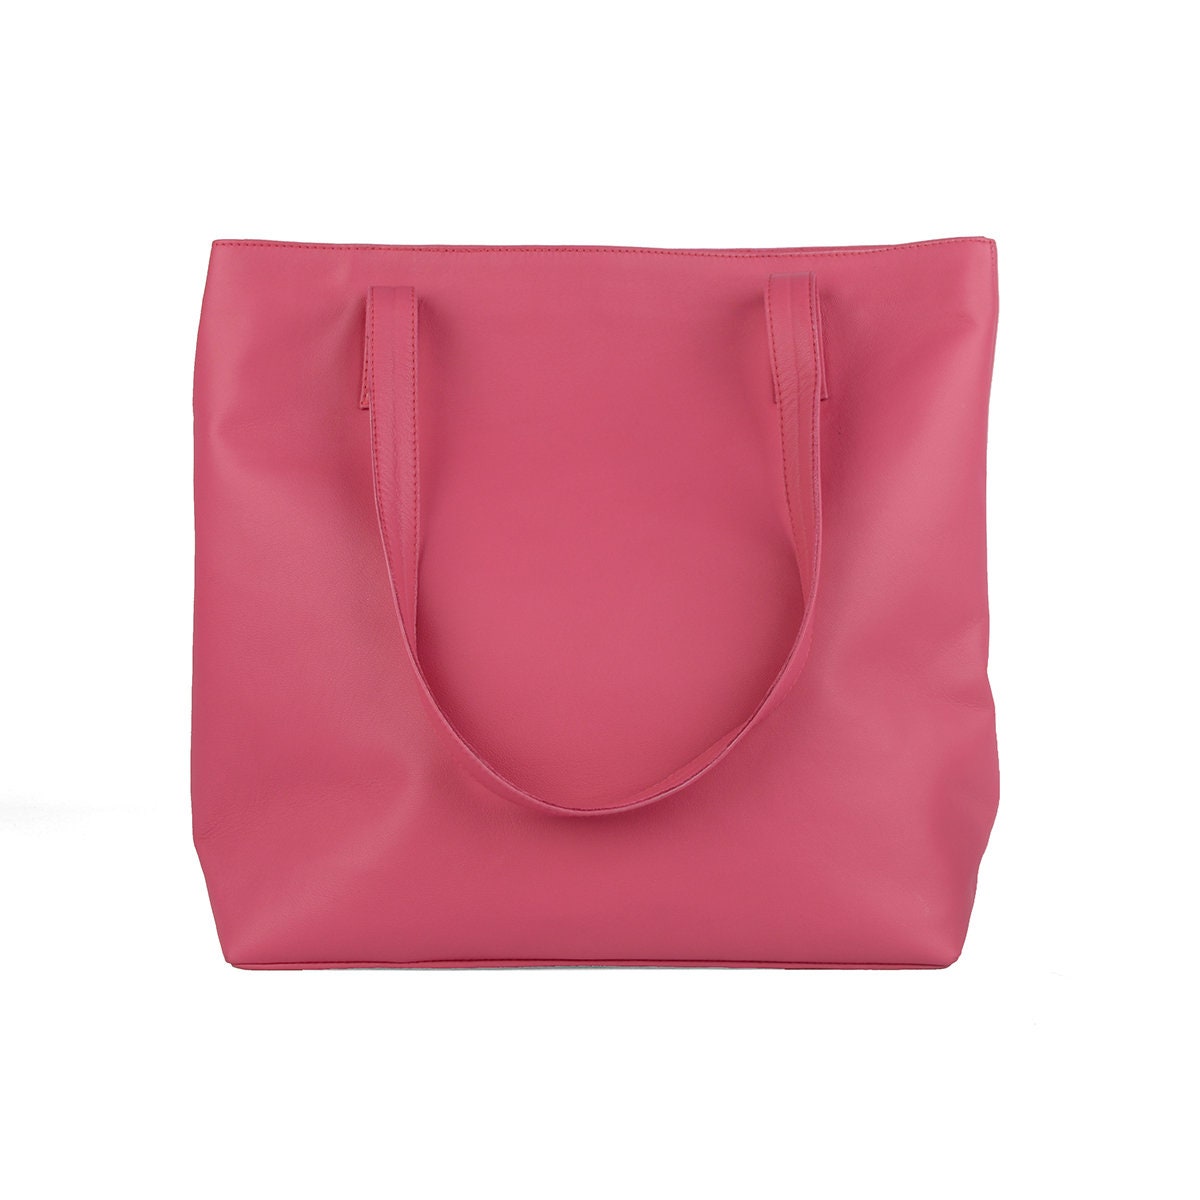 LUSH Leather Tote Bag / Shoulder Bag / Planner Bag. Available | Etsy